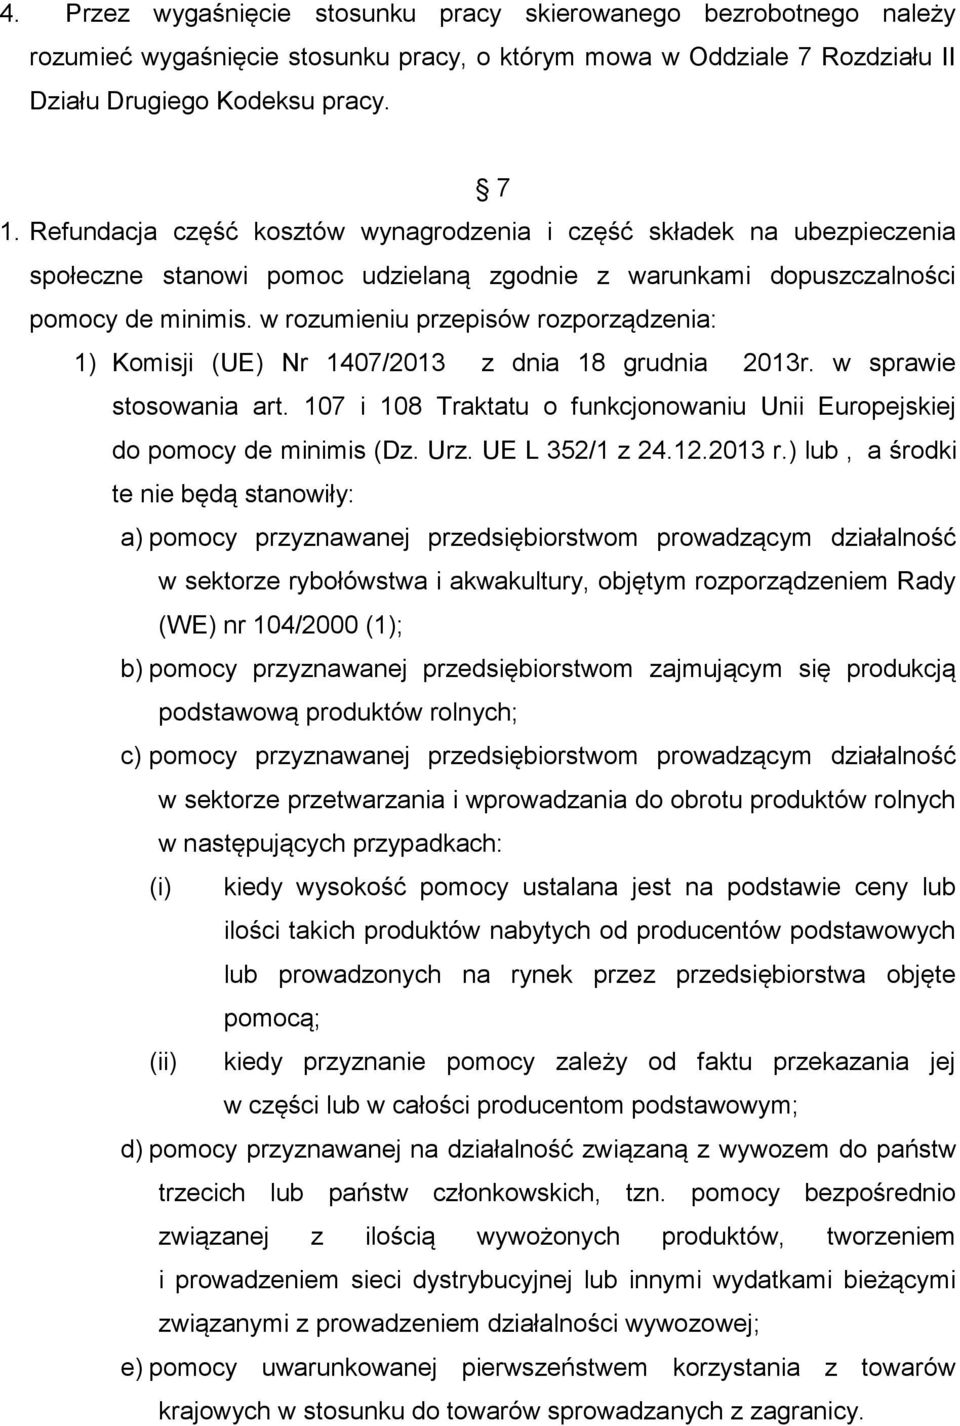 w rozumieniu przepisów rozporządzenia: 1) Komisji (UE) Nr 1407/2013 z dnia 18 grudnia 2013r. w sprawie stosowania art. 107 i 108 Traktatu o funkcjonowaniu Unii Europejskiej do pomocy de minimis (Dz.